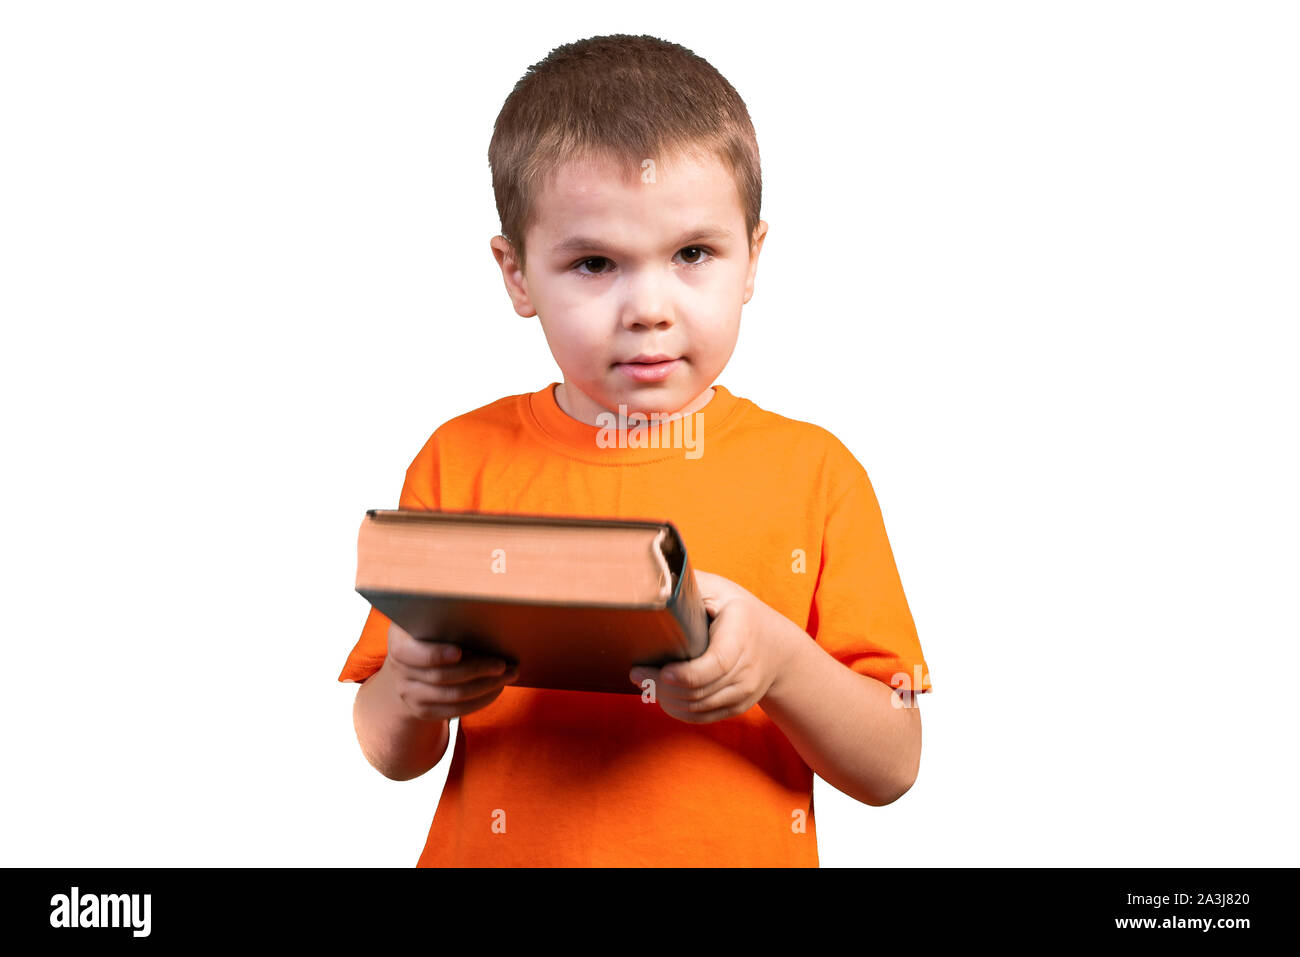 Kleiner Junge mit einem Buch in seinen Händen. Auf einem weißen Hintergrund. Stockfoto